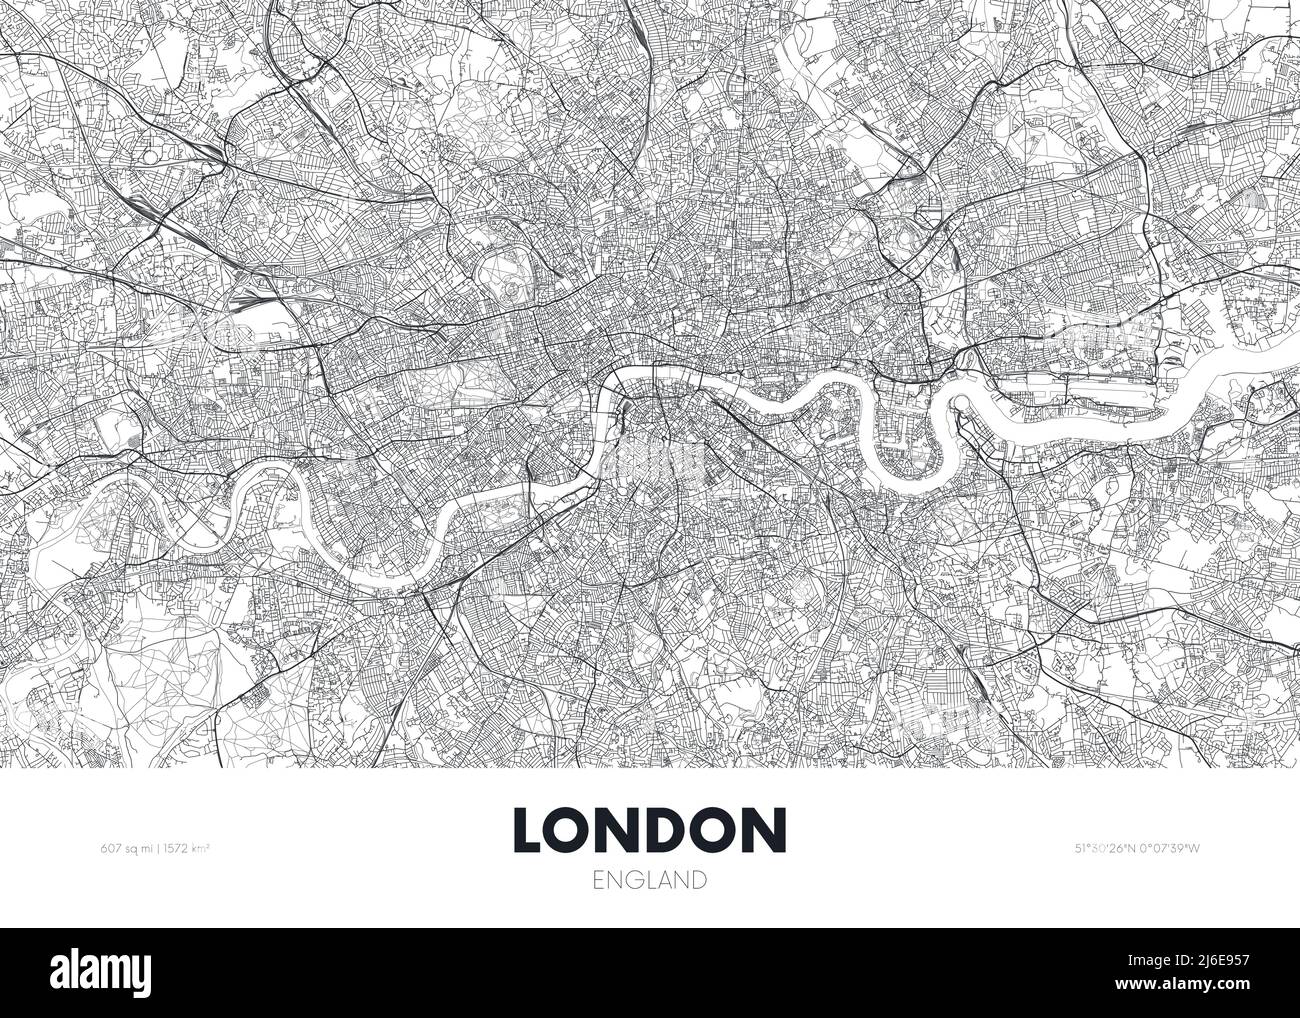 Plan de la ville Londres Angleterre, affiche de voyage Plan urbain détaillé, illustration vectorielle Illustration de Vecteur